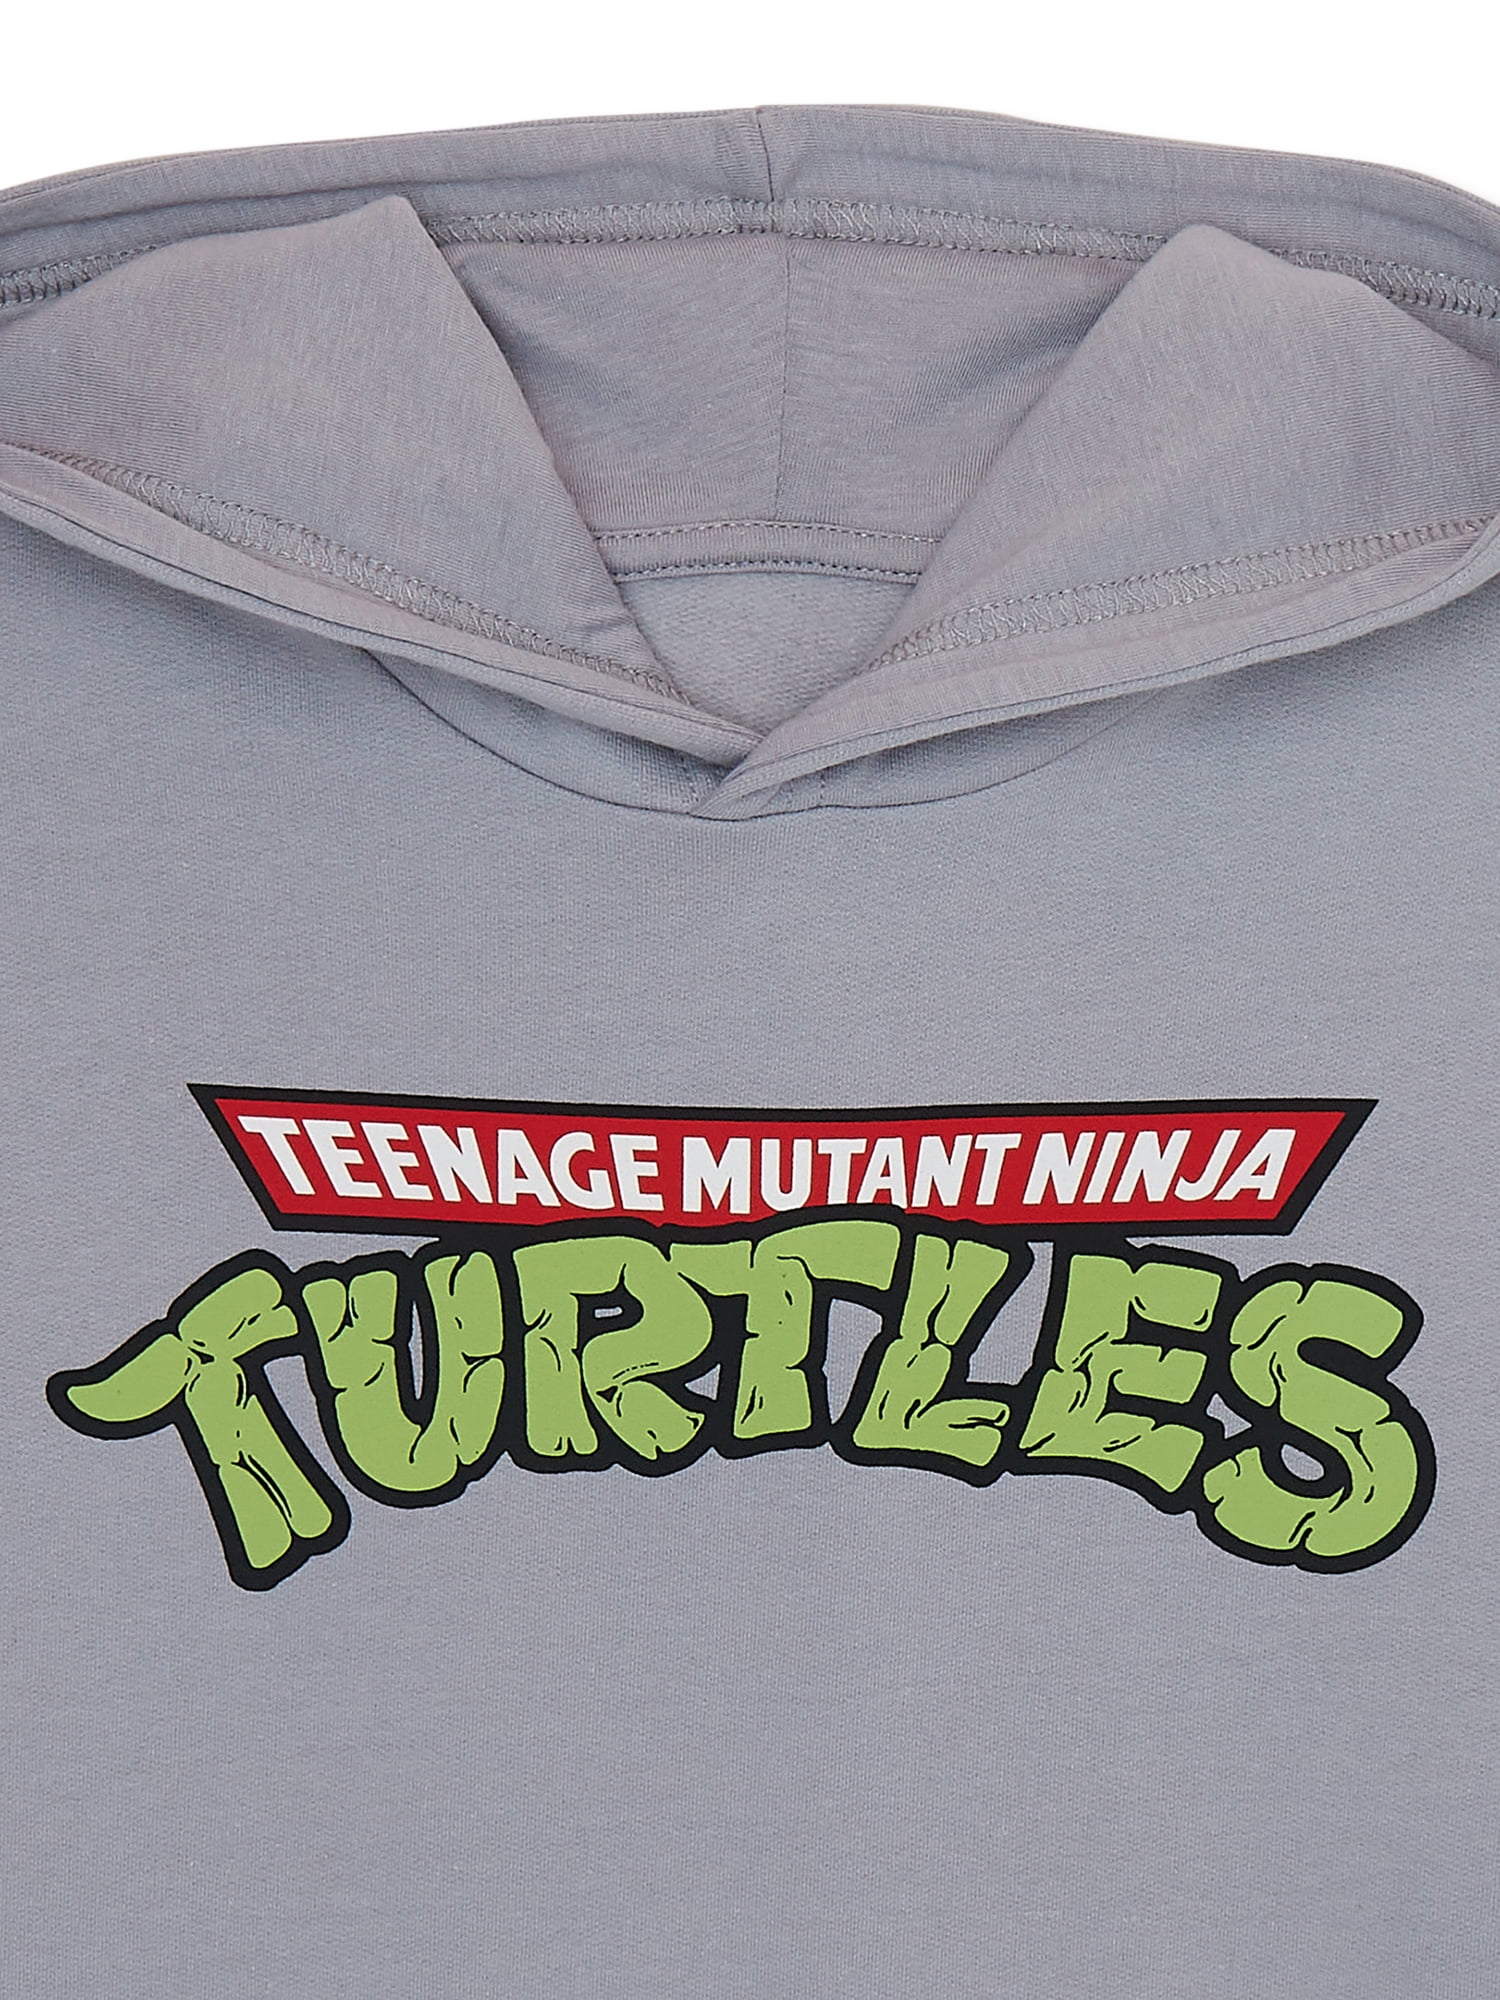 Teenage Mutant Ninja Turtles 'Turtle Power' Boys 8-20 TShirt